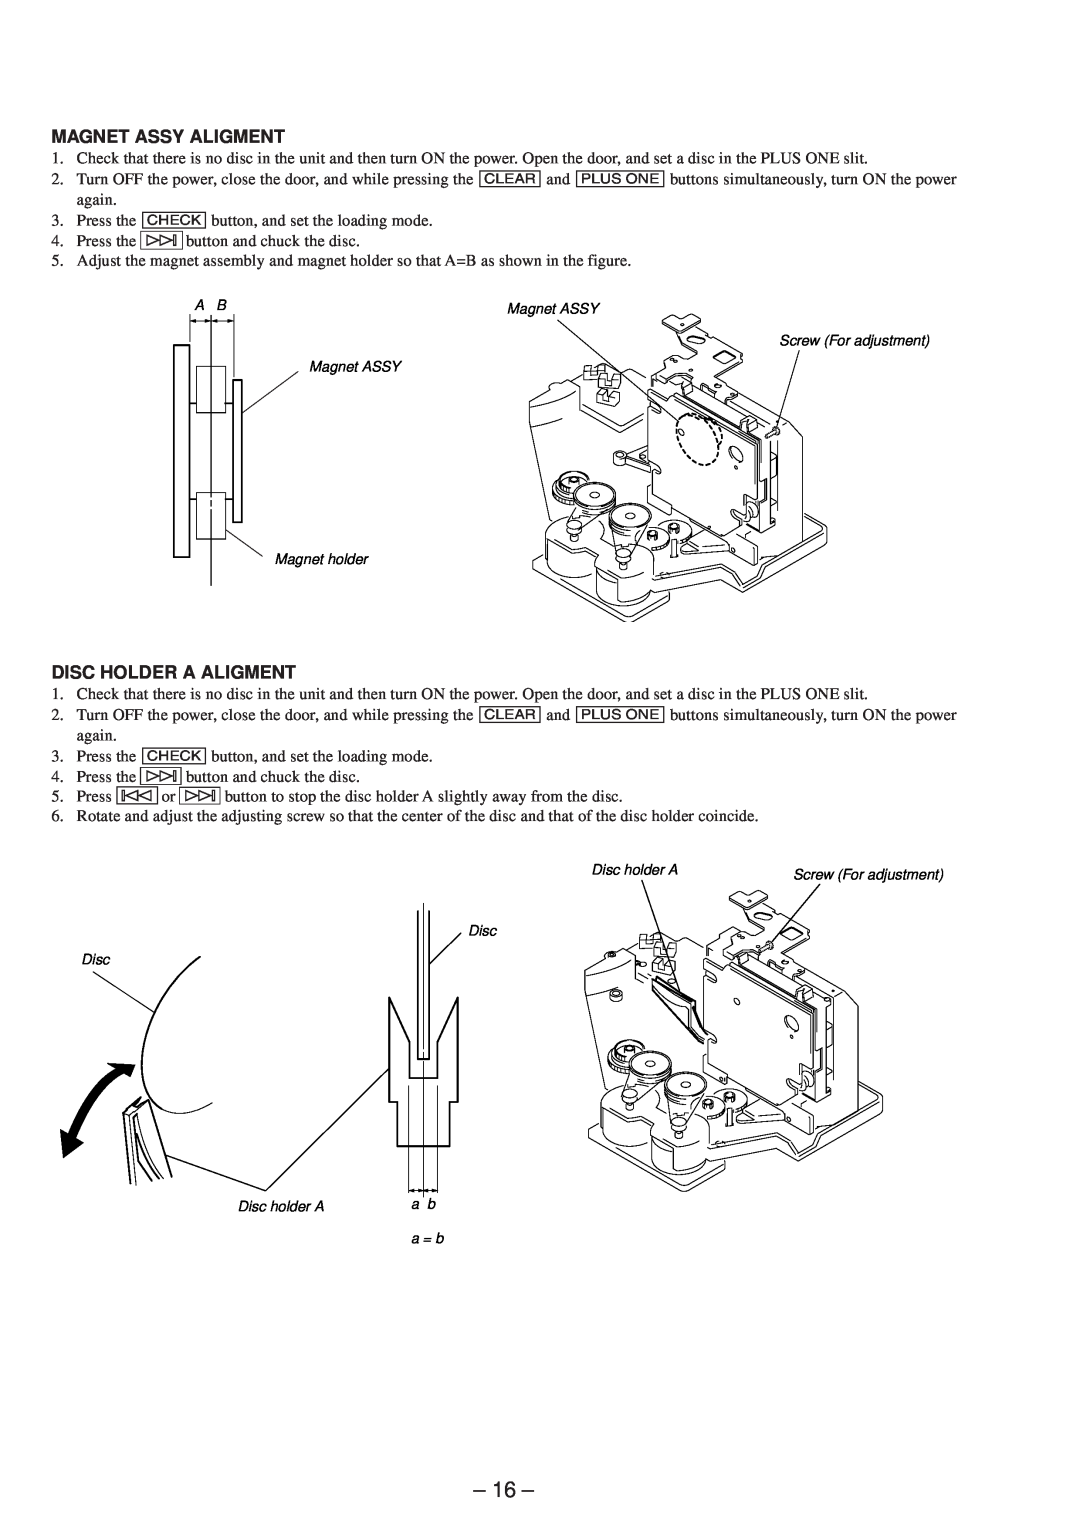 Technicolor - Thomson CDP-CX57 service manual Magnet Assy Aligment, Disc Holder A Aligment 